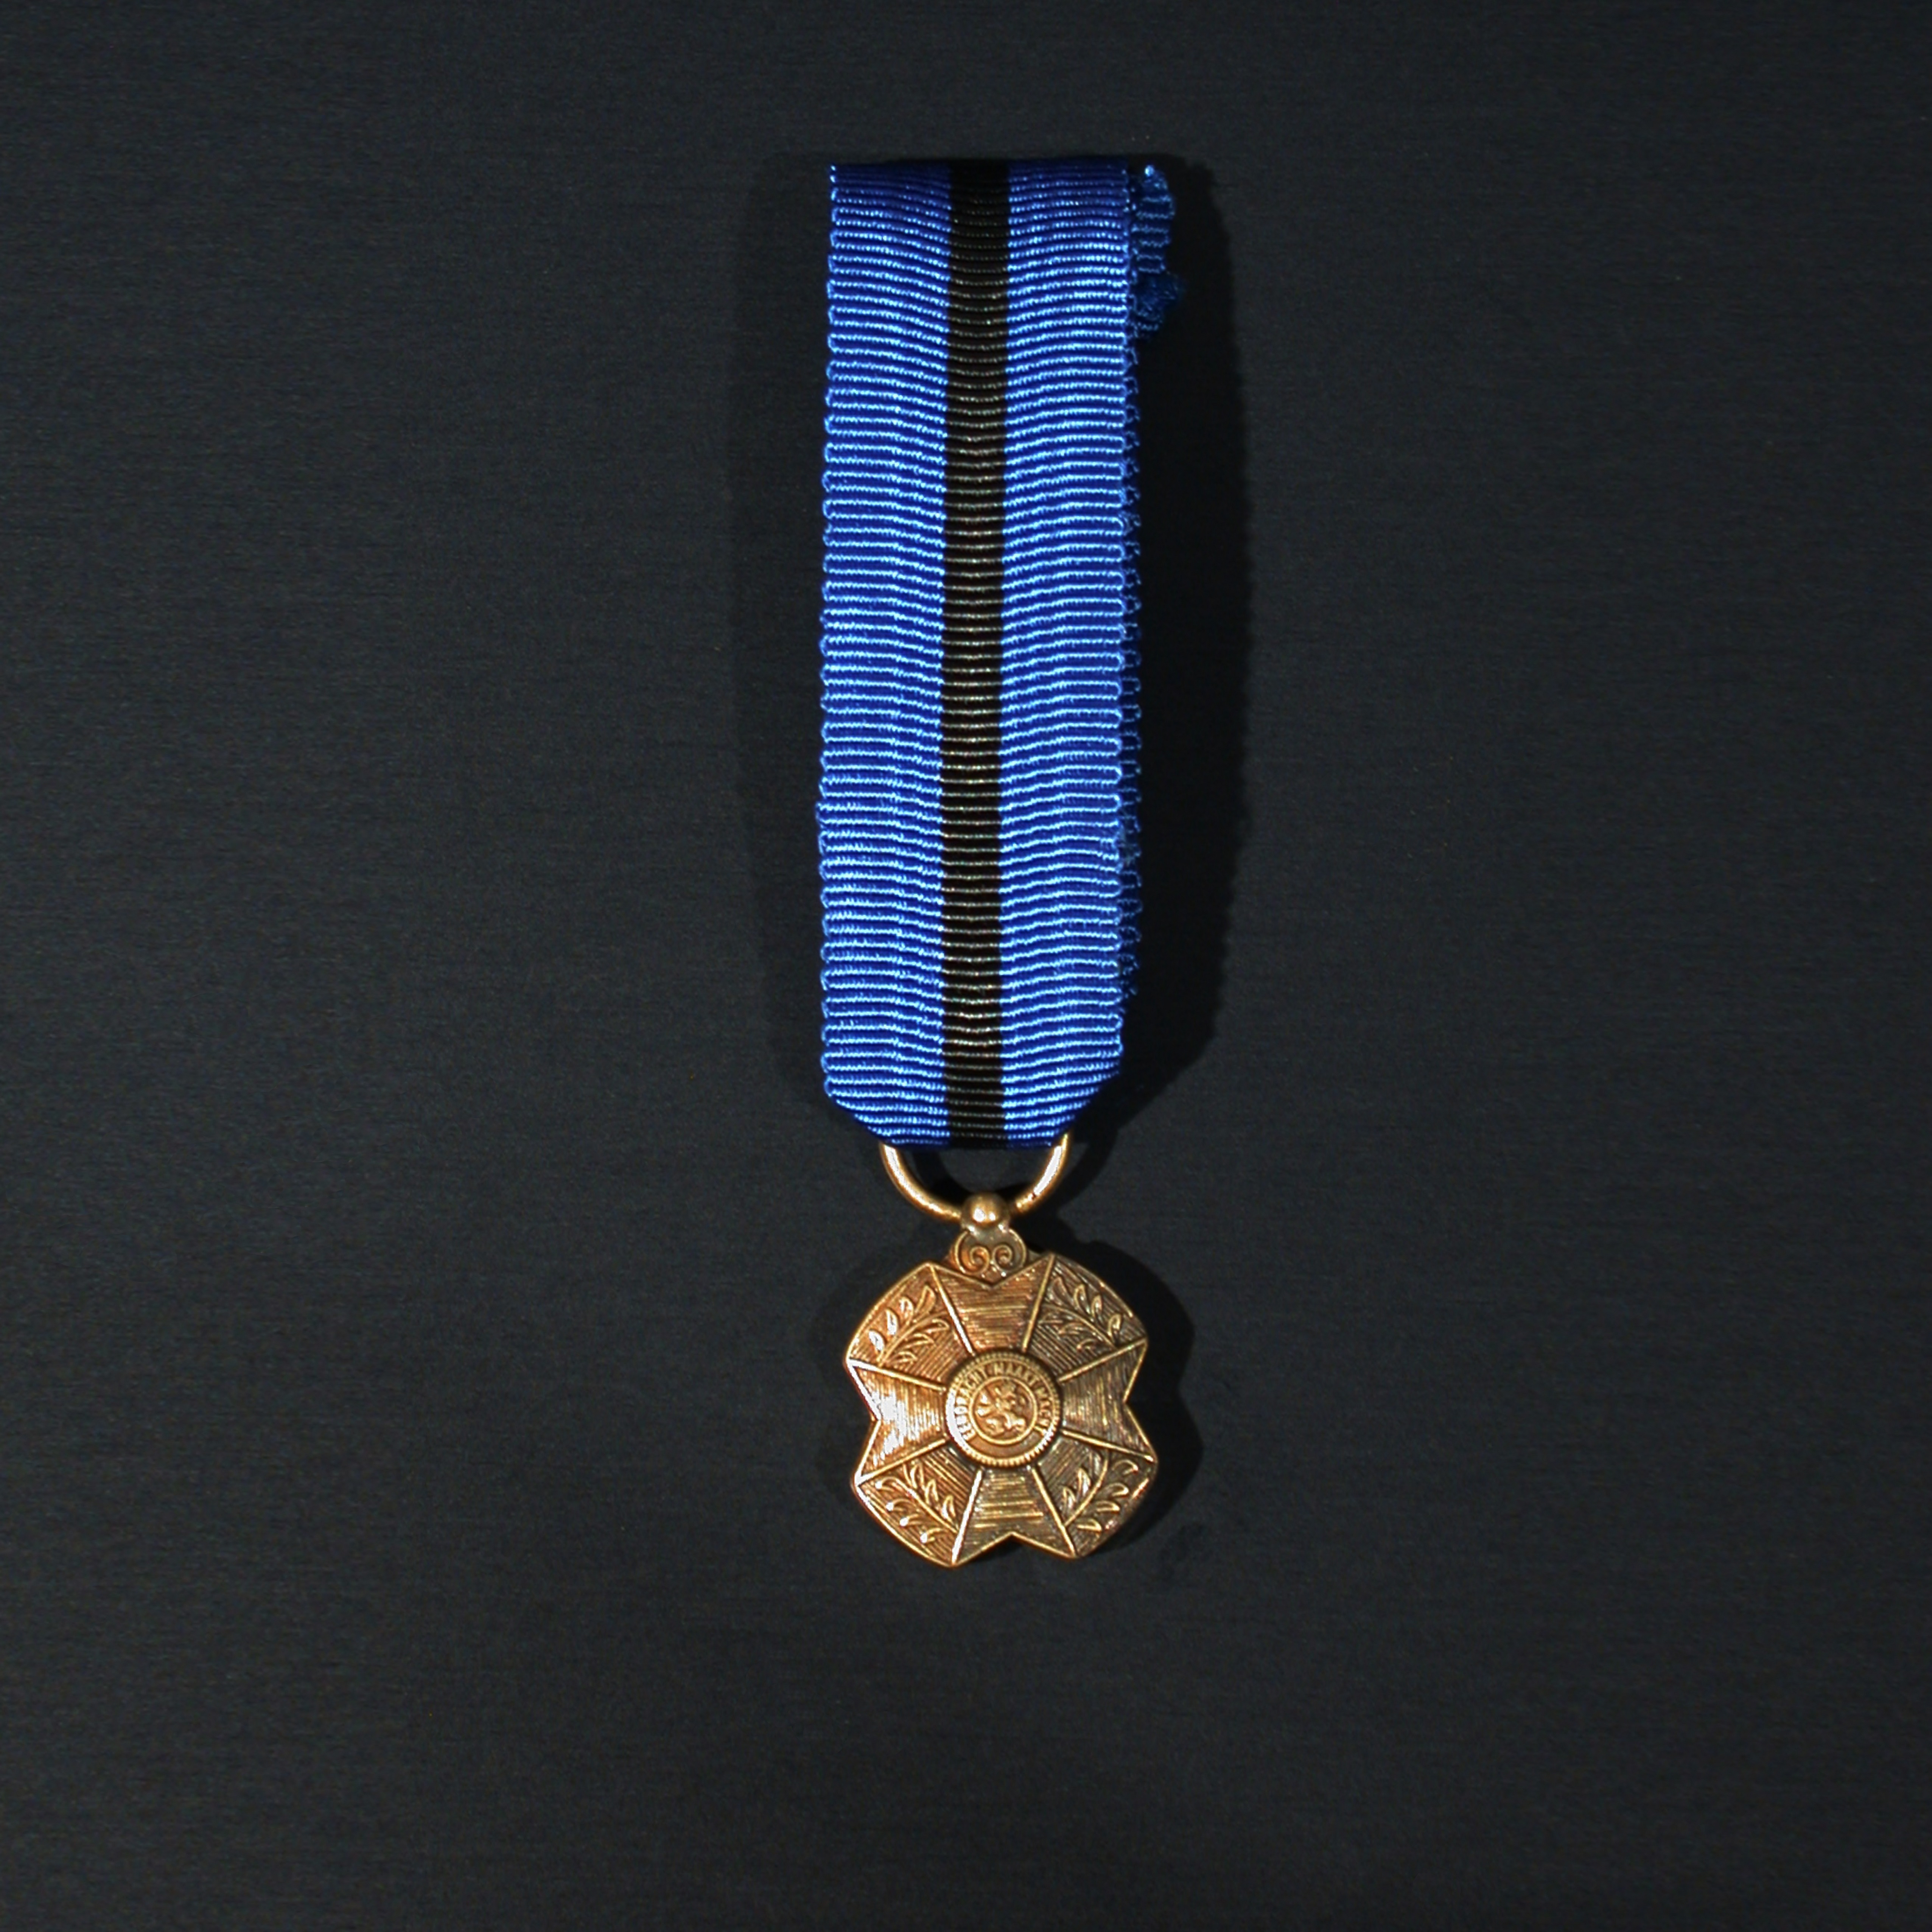 01-01-04-orde-leopold-ii-bronzen-medaille-reductie.jpg